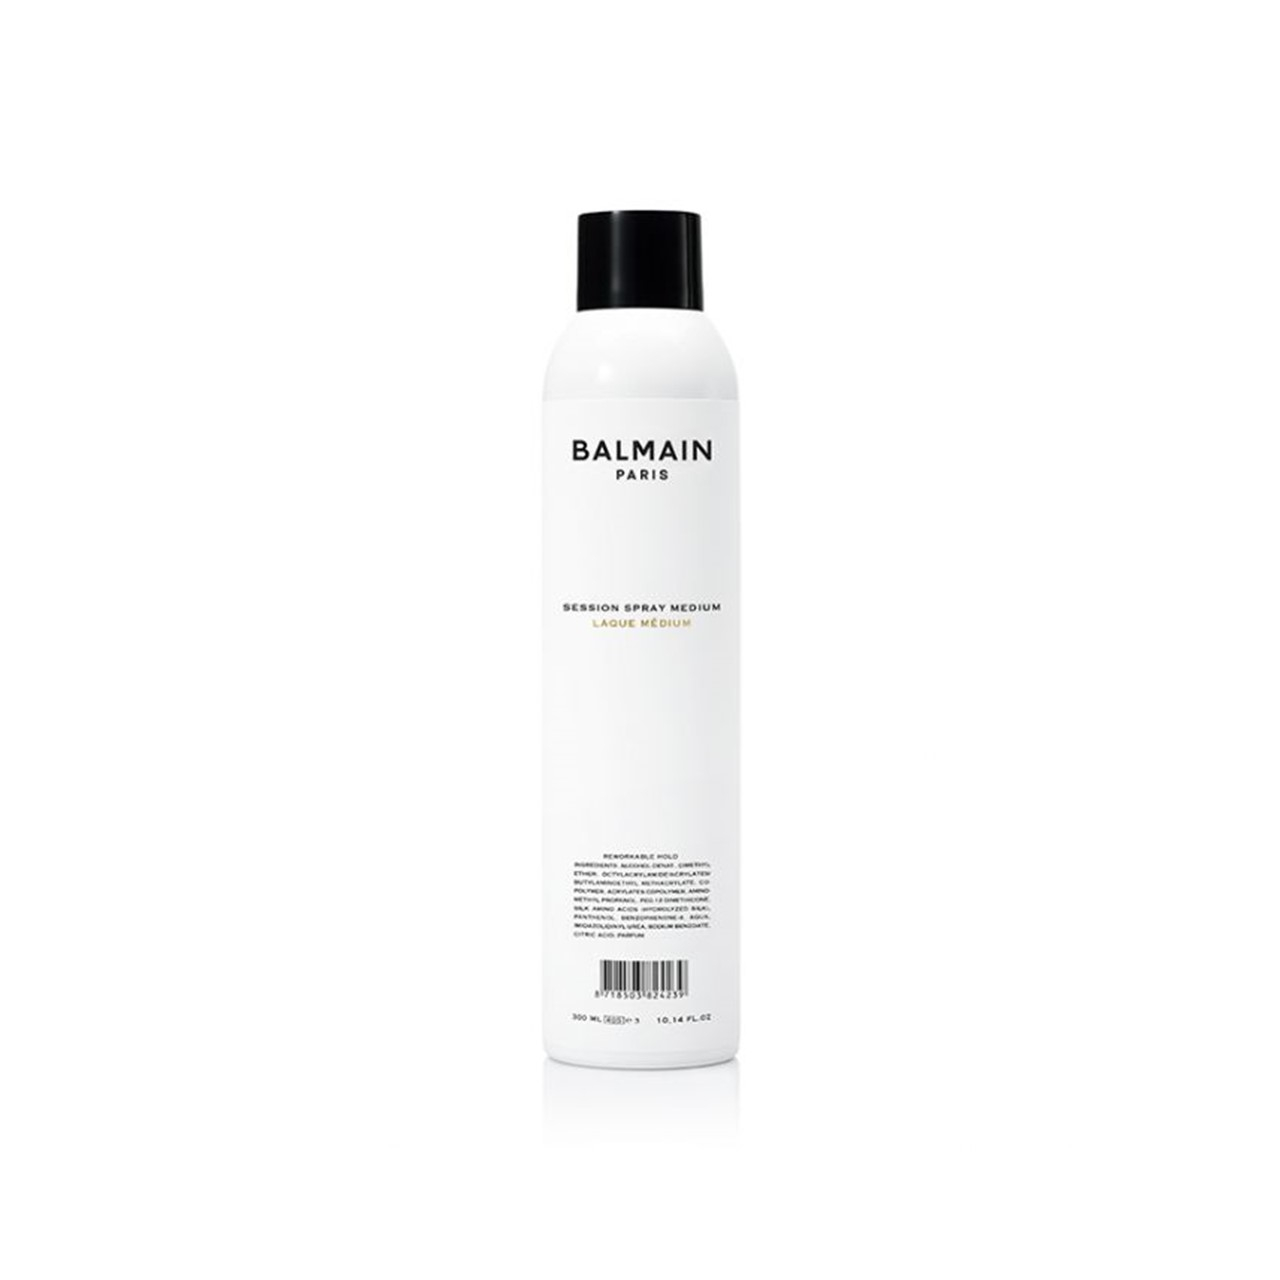 Balmain Hair Session Spray Medium 300ml